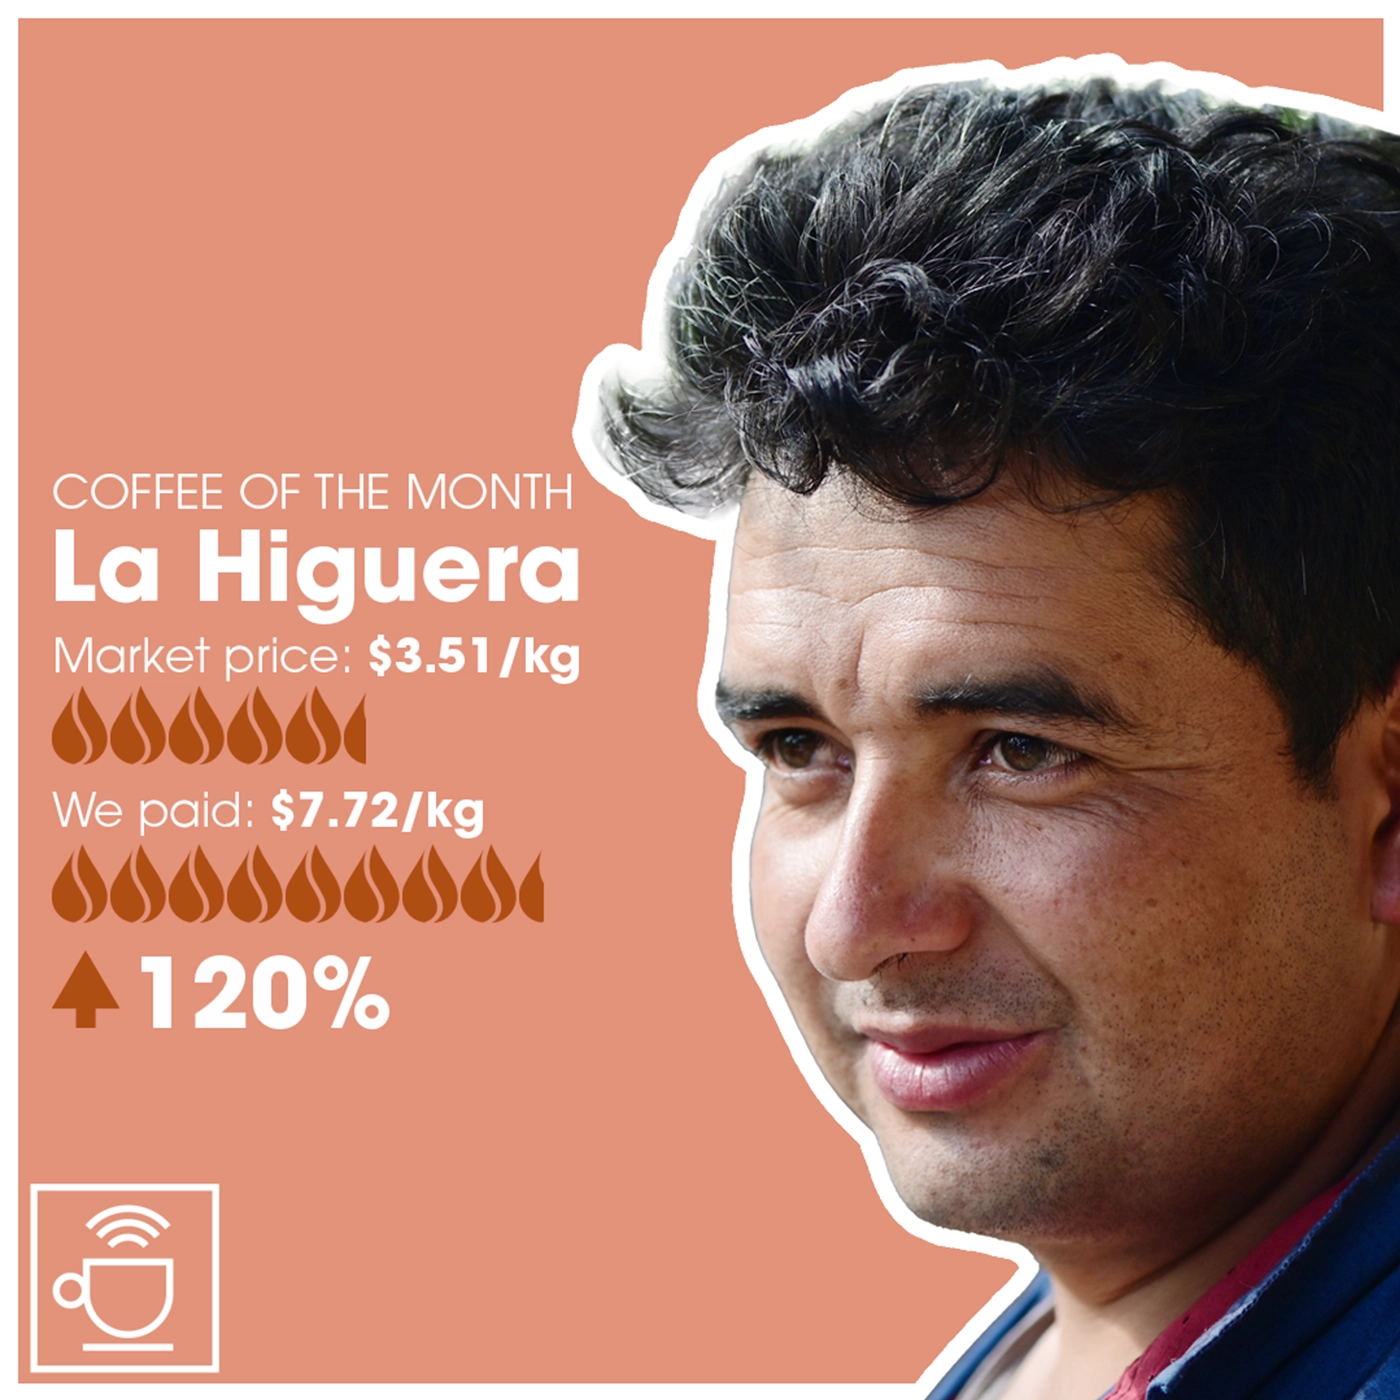 månedens kaffe la higuera, markedspris $3,51/kg, CleverCoffee betalte $7,72/kg, 120% over markedspris 